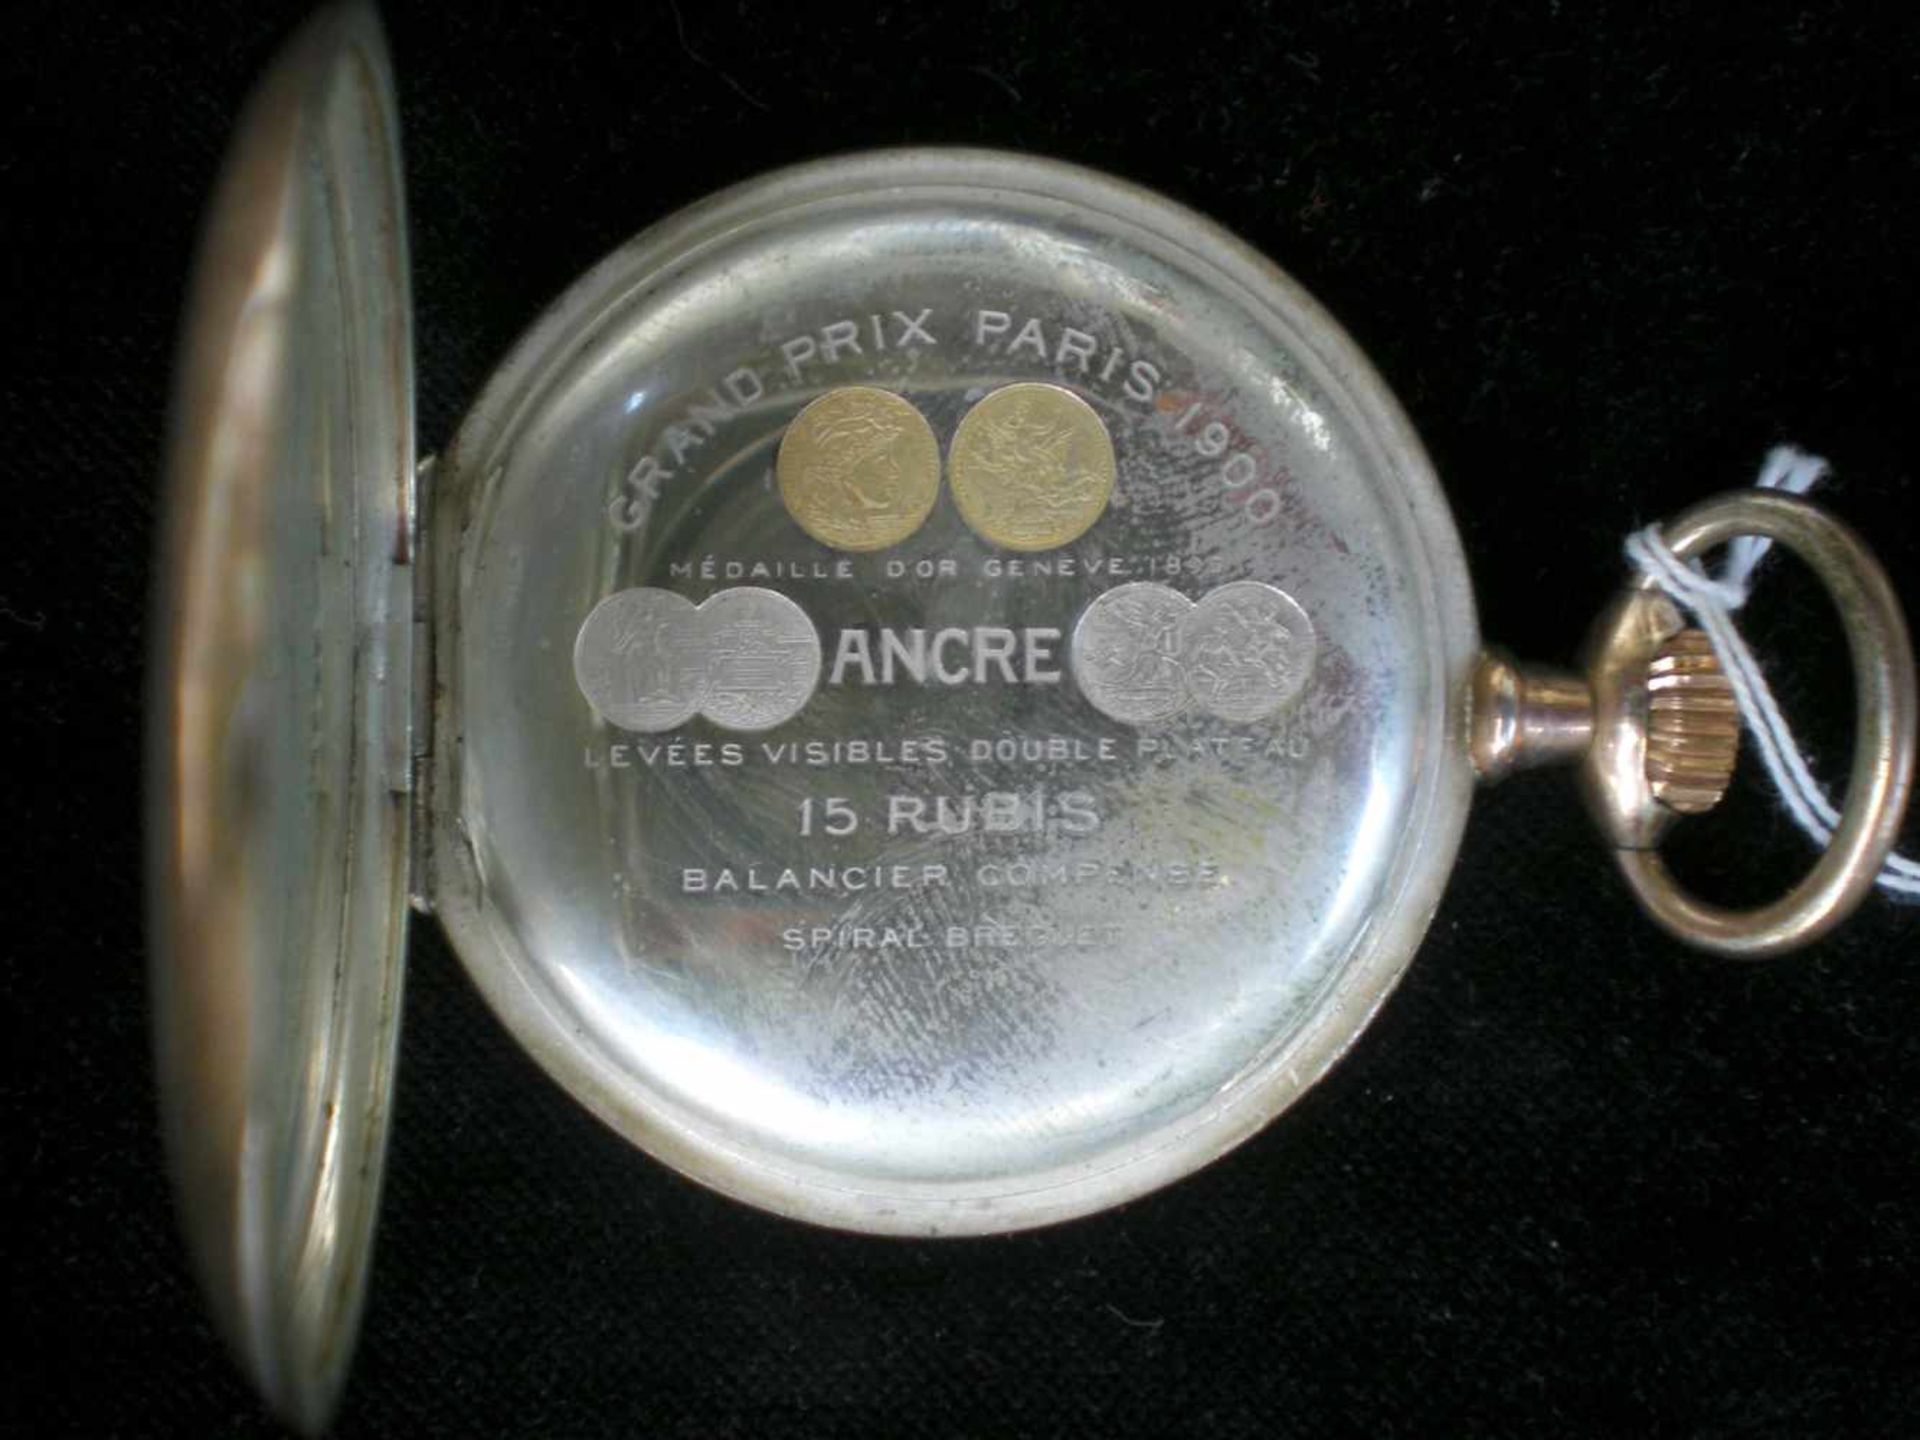 Taschenuhr, 800/- Silber vergoldet, Zenith, Grand Prix Paris 1900, 15 Rubis, arab. Ziffern, kl. - Bild 5 aus 6